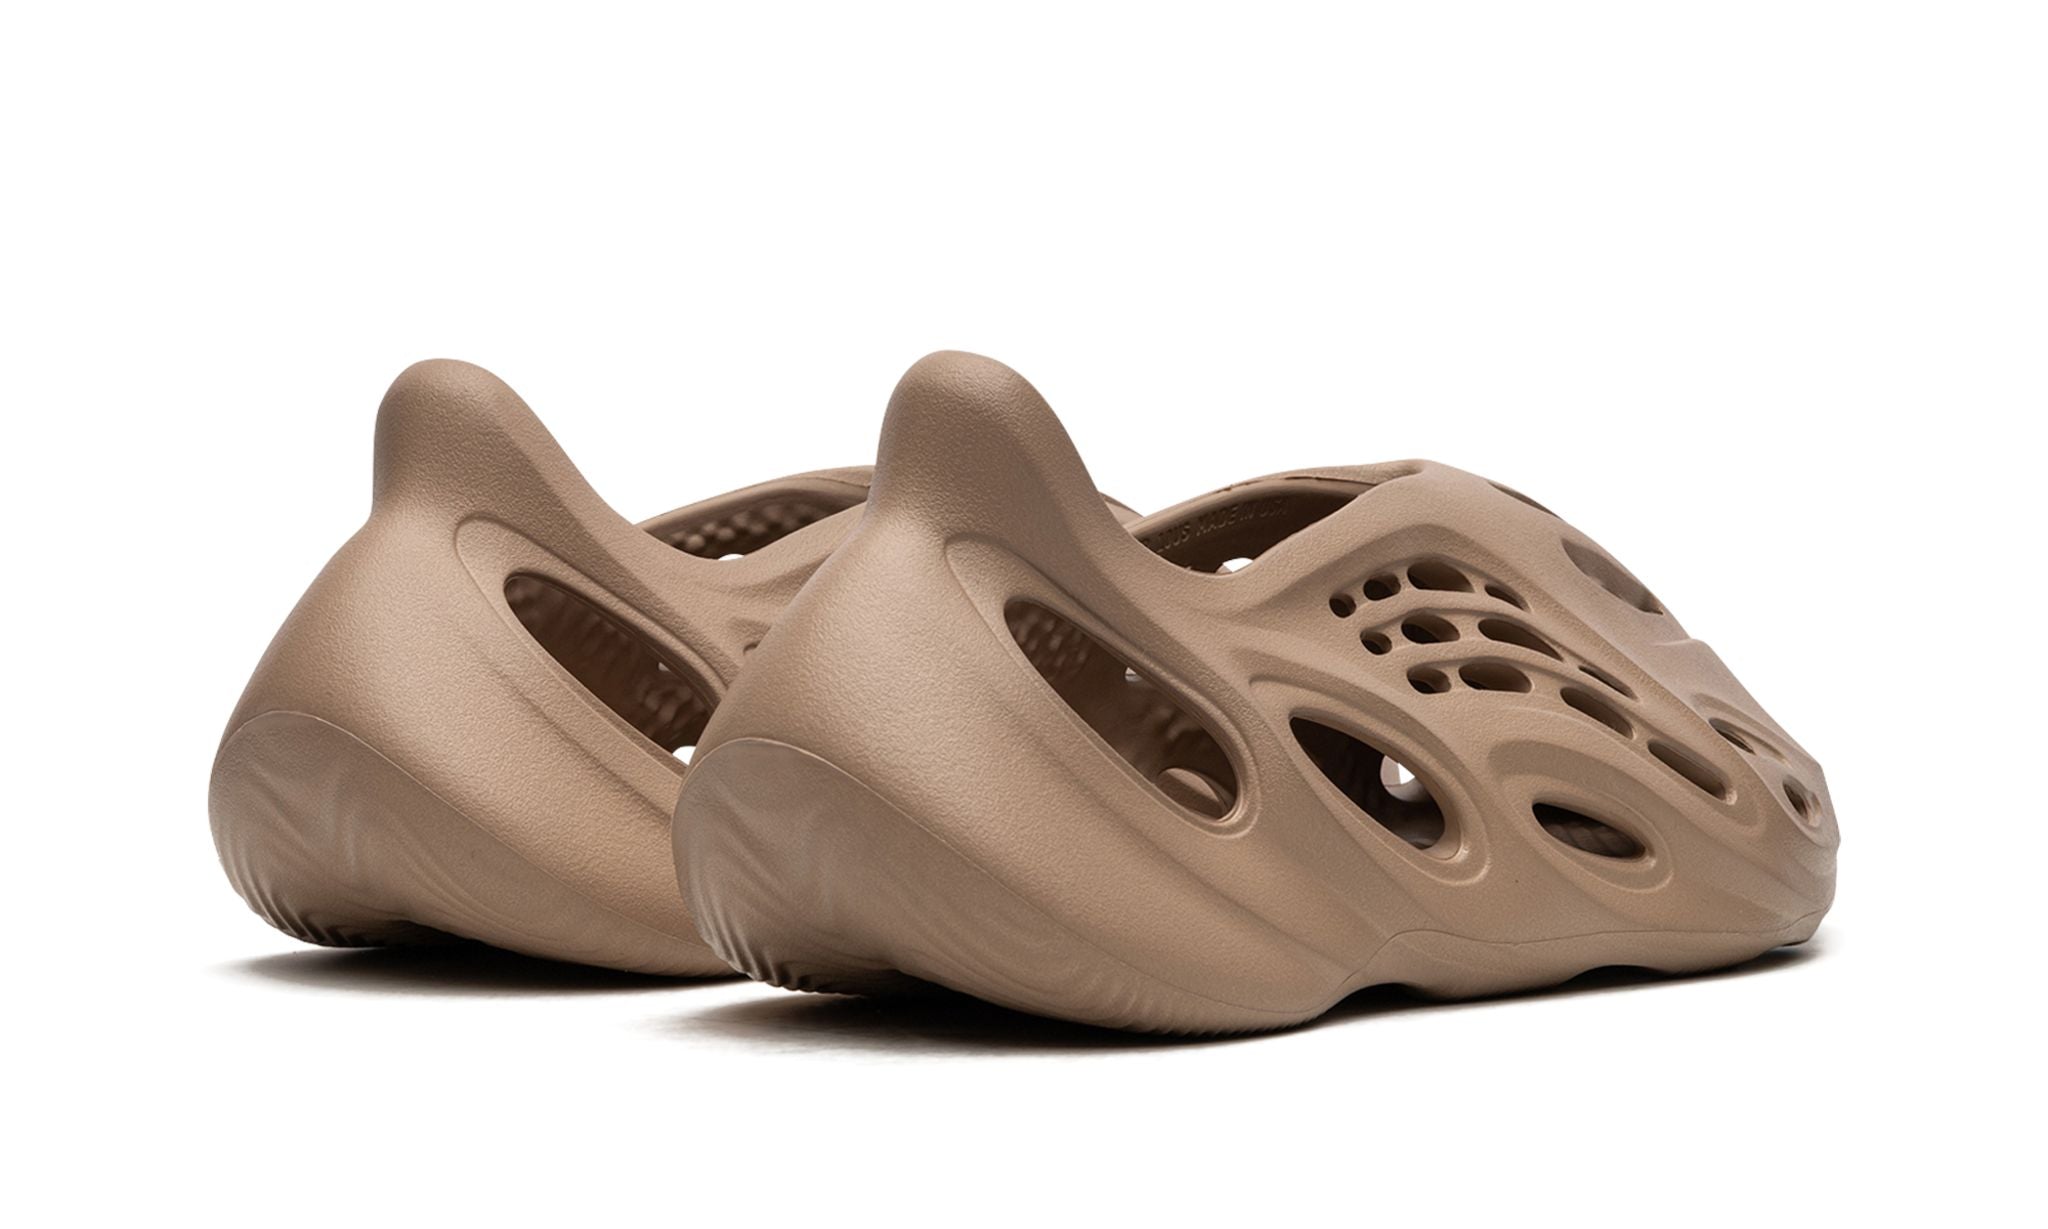 Adidas Yeezy Foam Runner Clay Taupe - Yeezy Foam Runner - Pirri